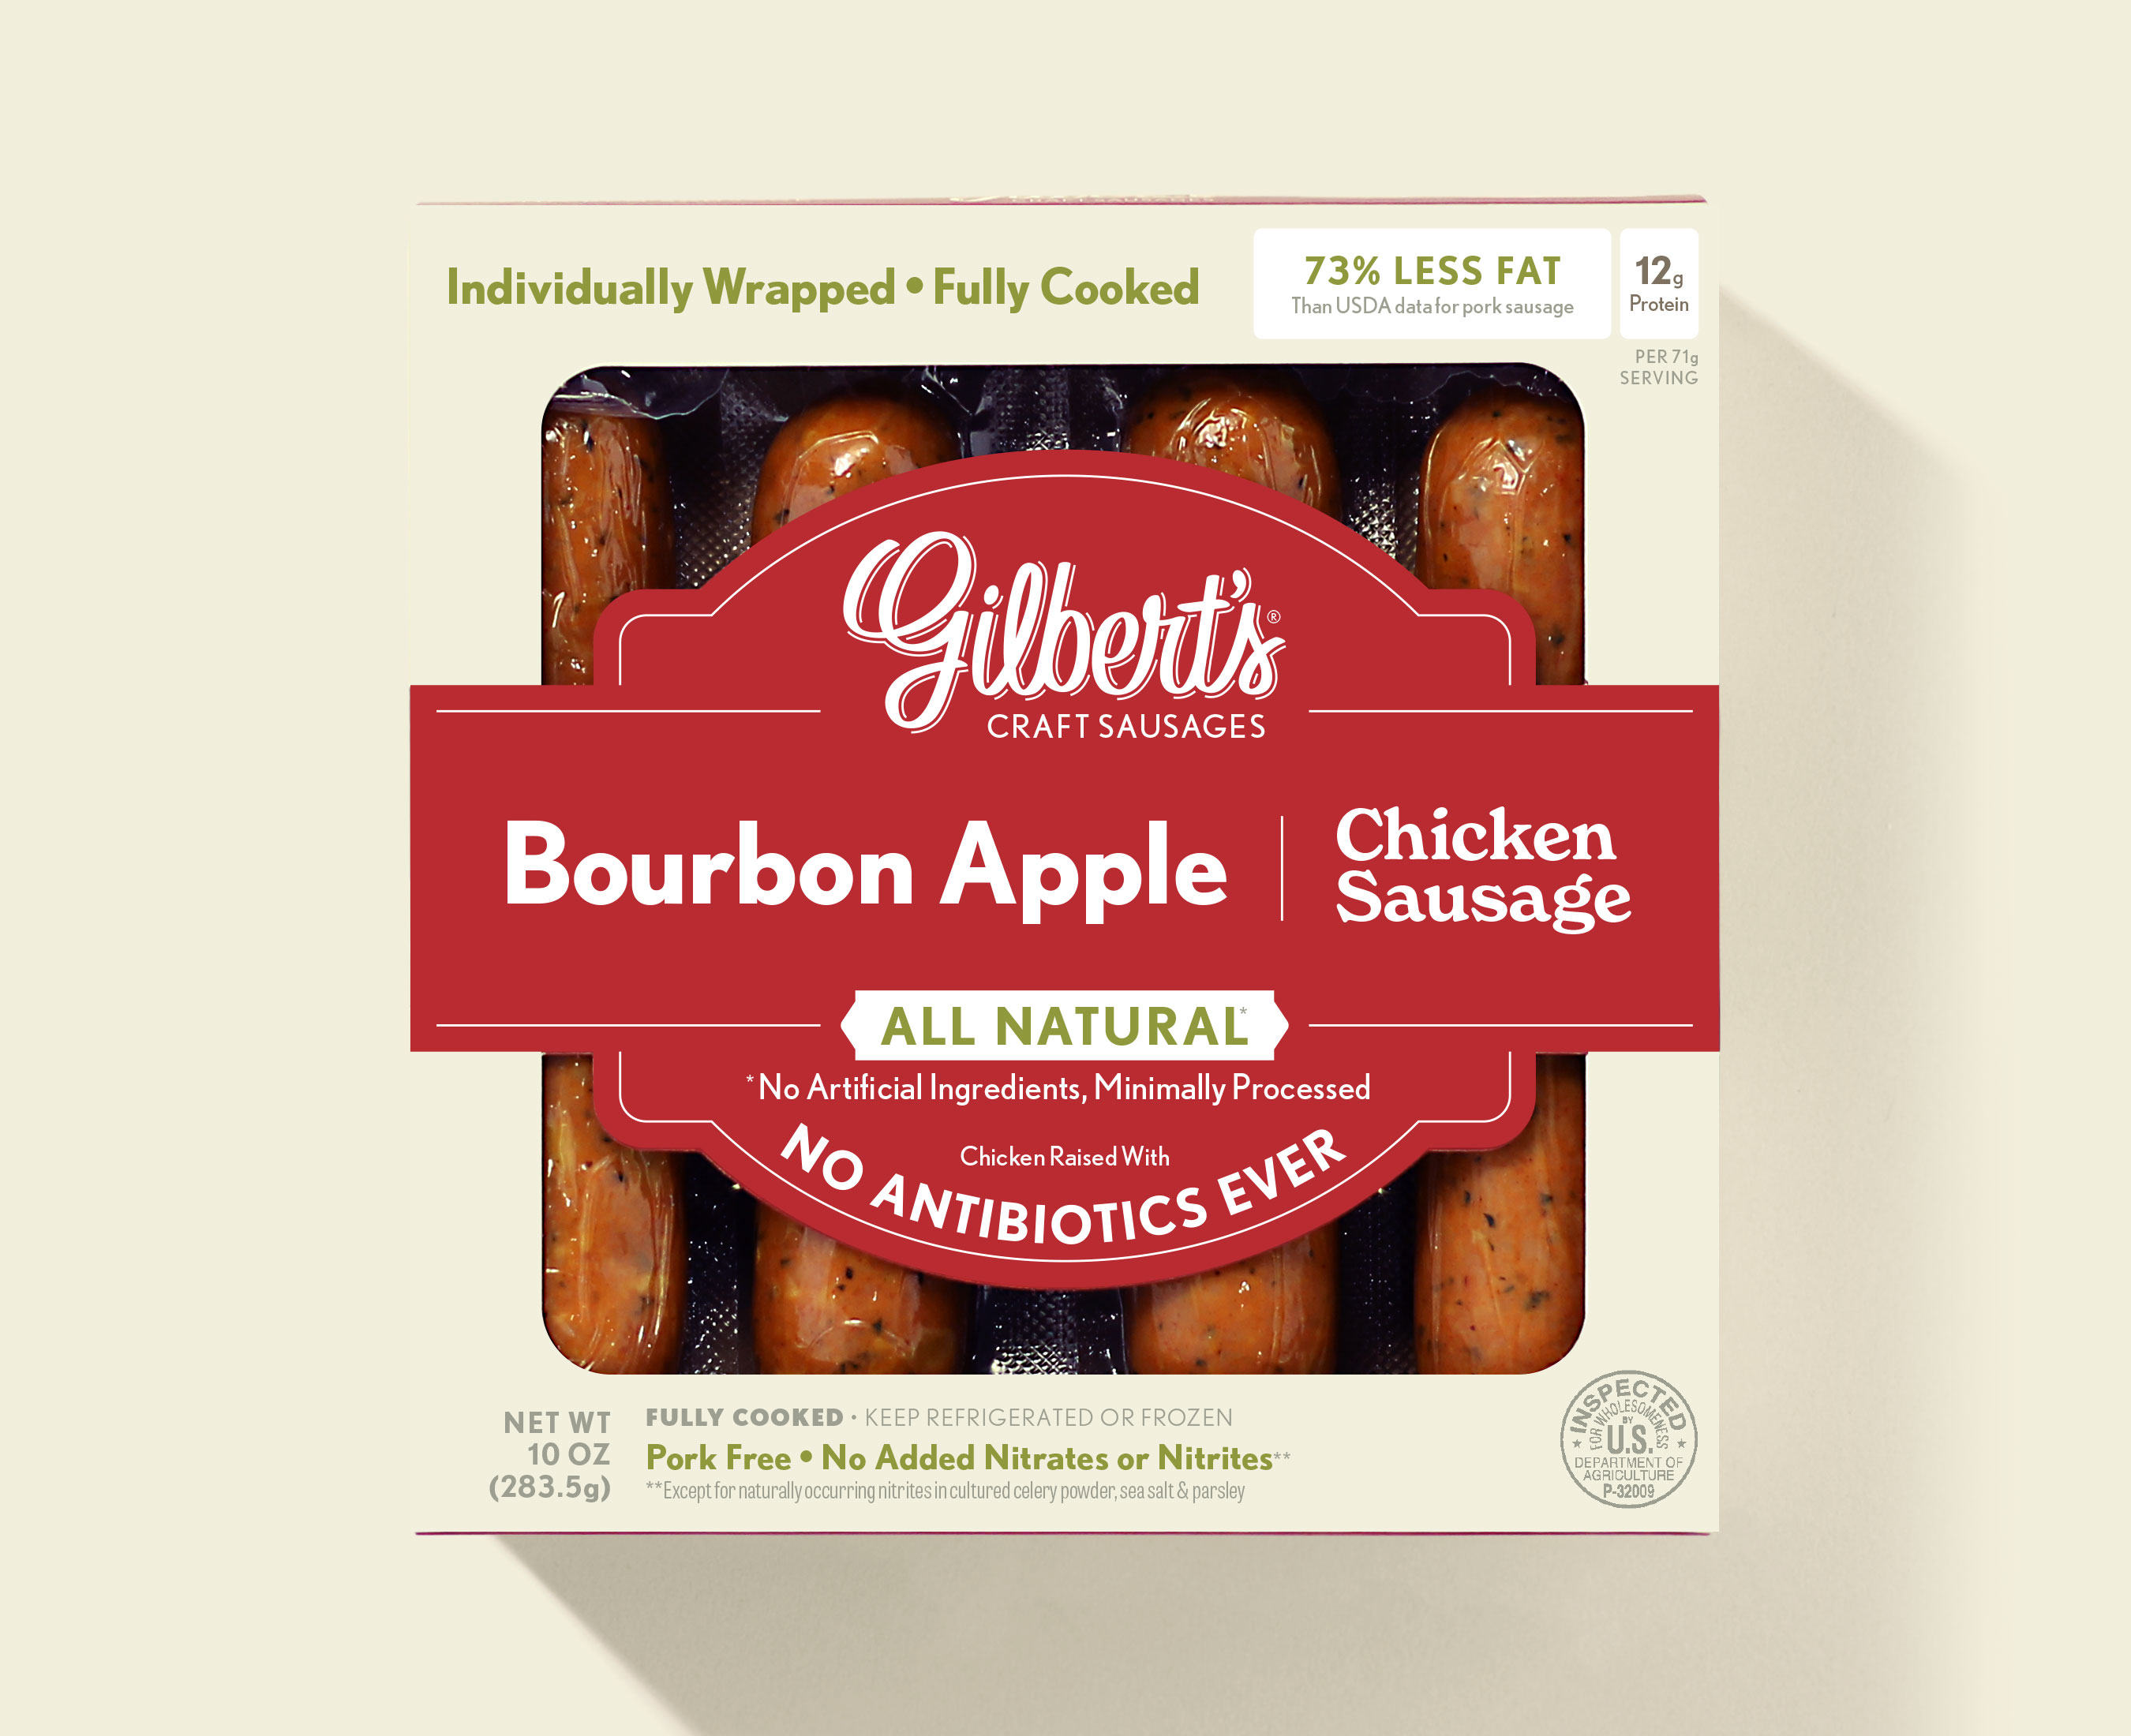 Bourbon Apple Chicken Sausage